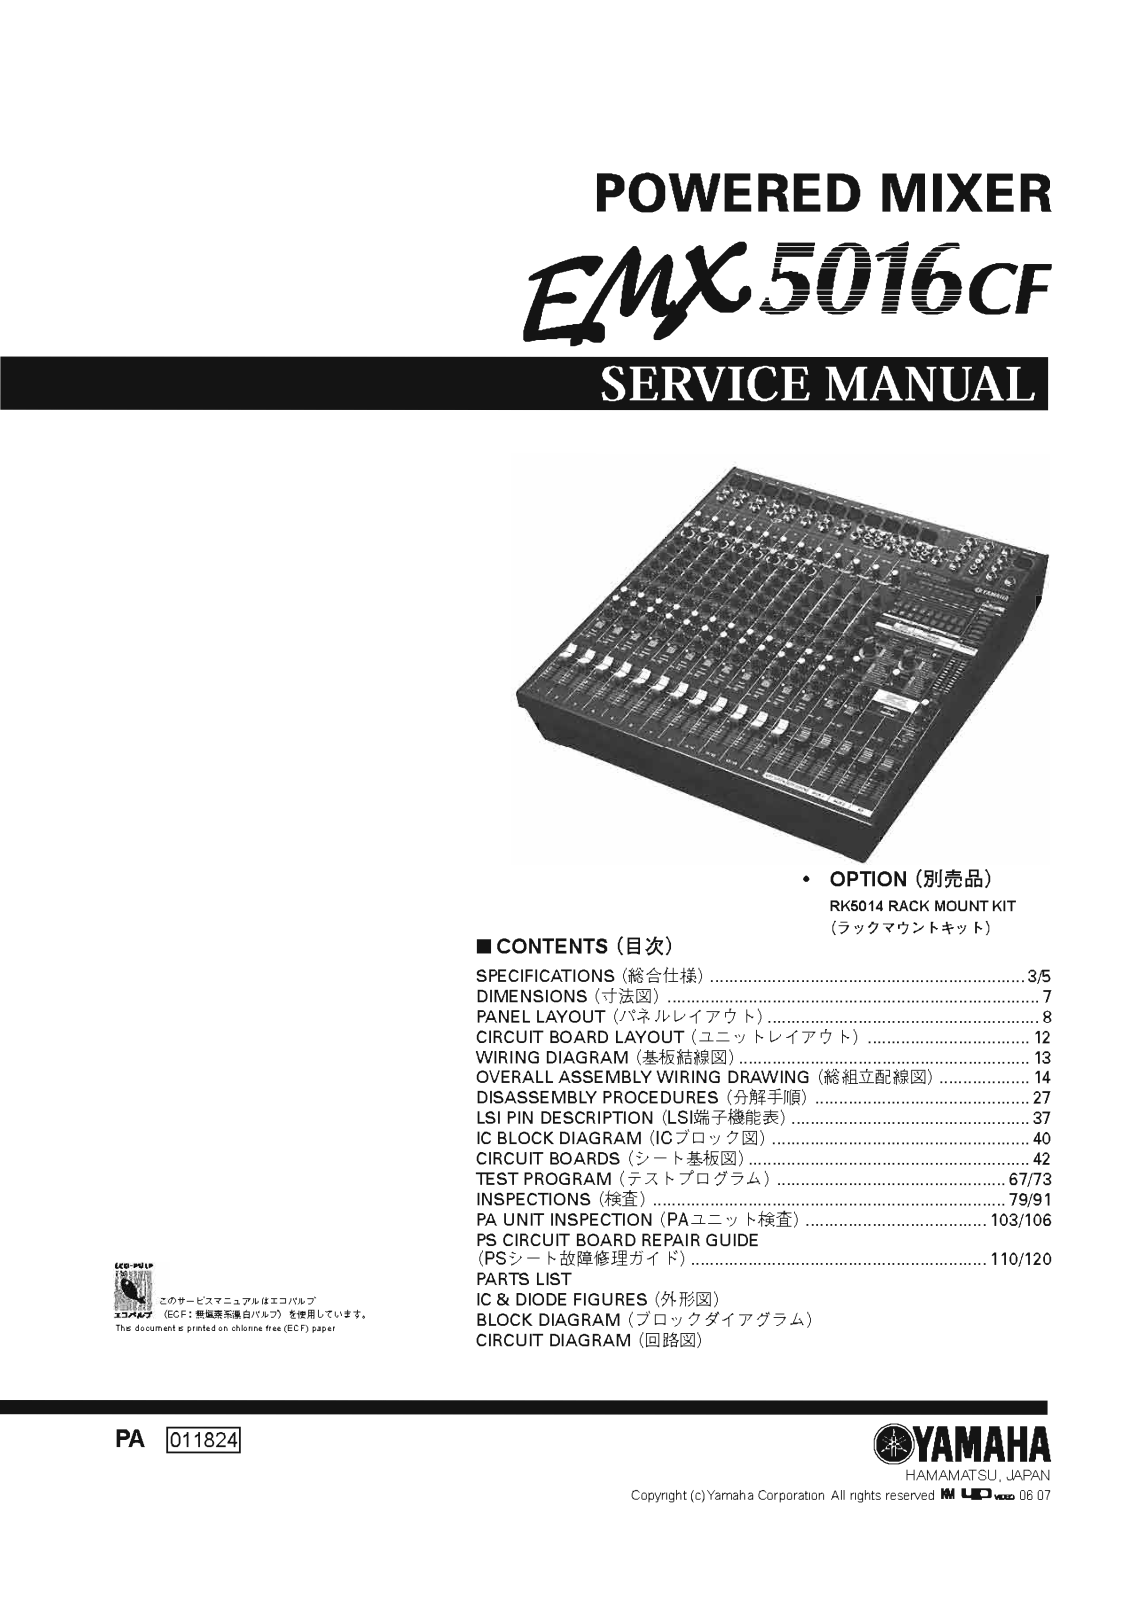 Yamaha EMX-5016-CF Service Manual